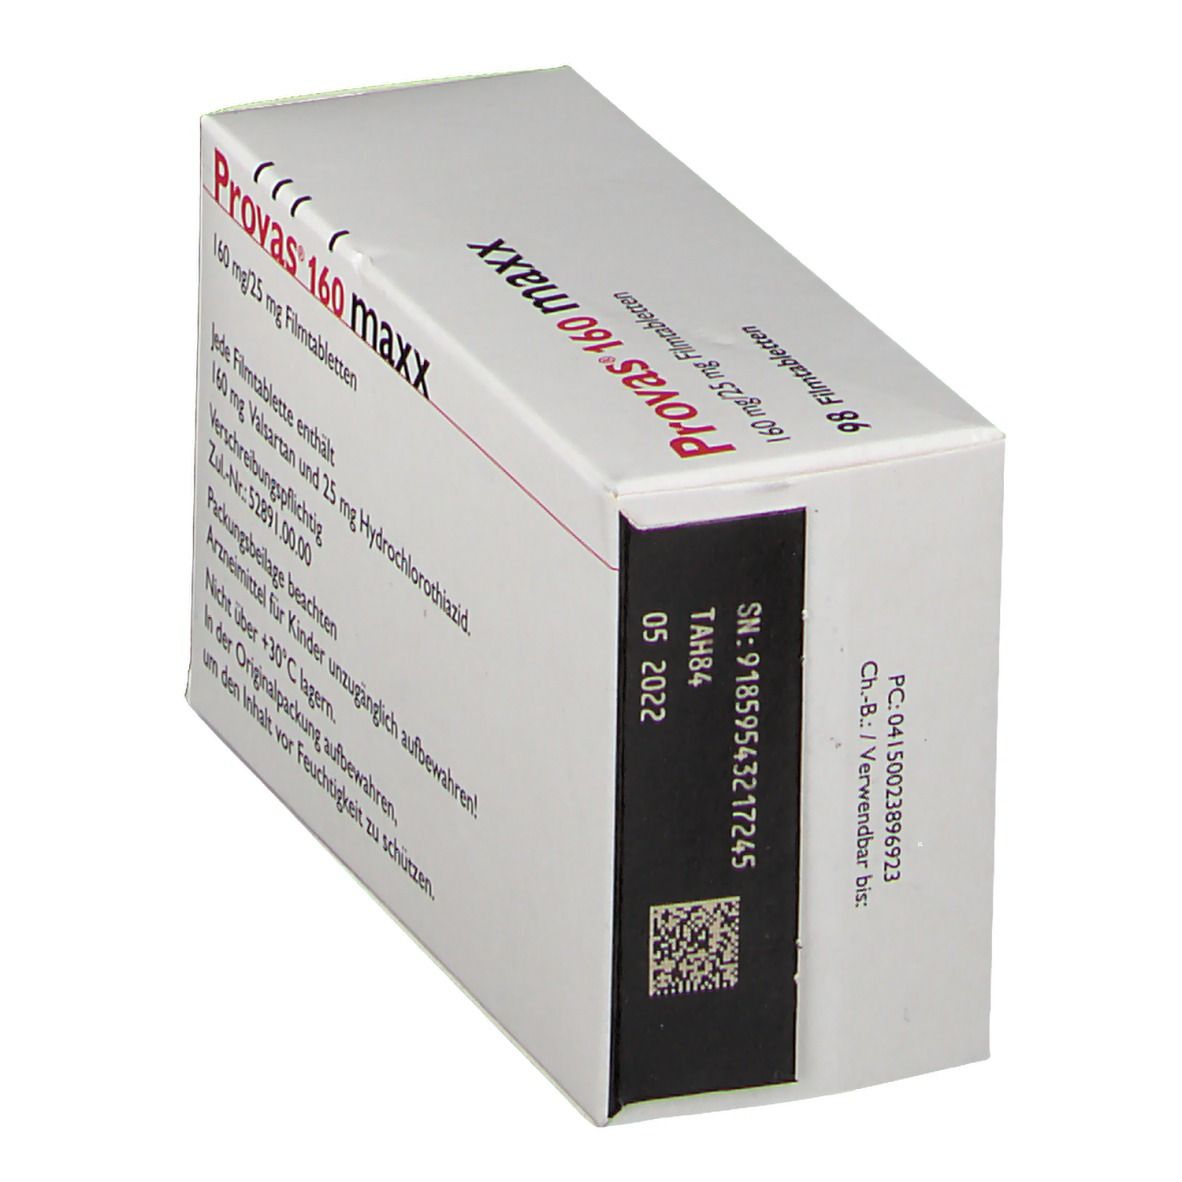 Provas® 160 maxx 160 mg/25 mg